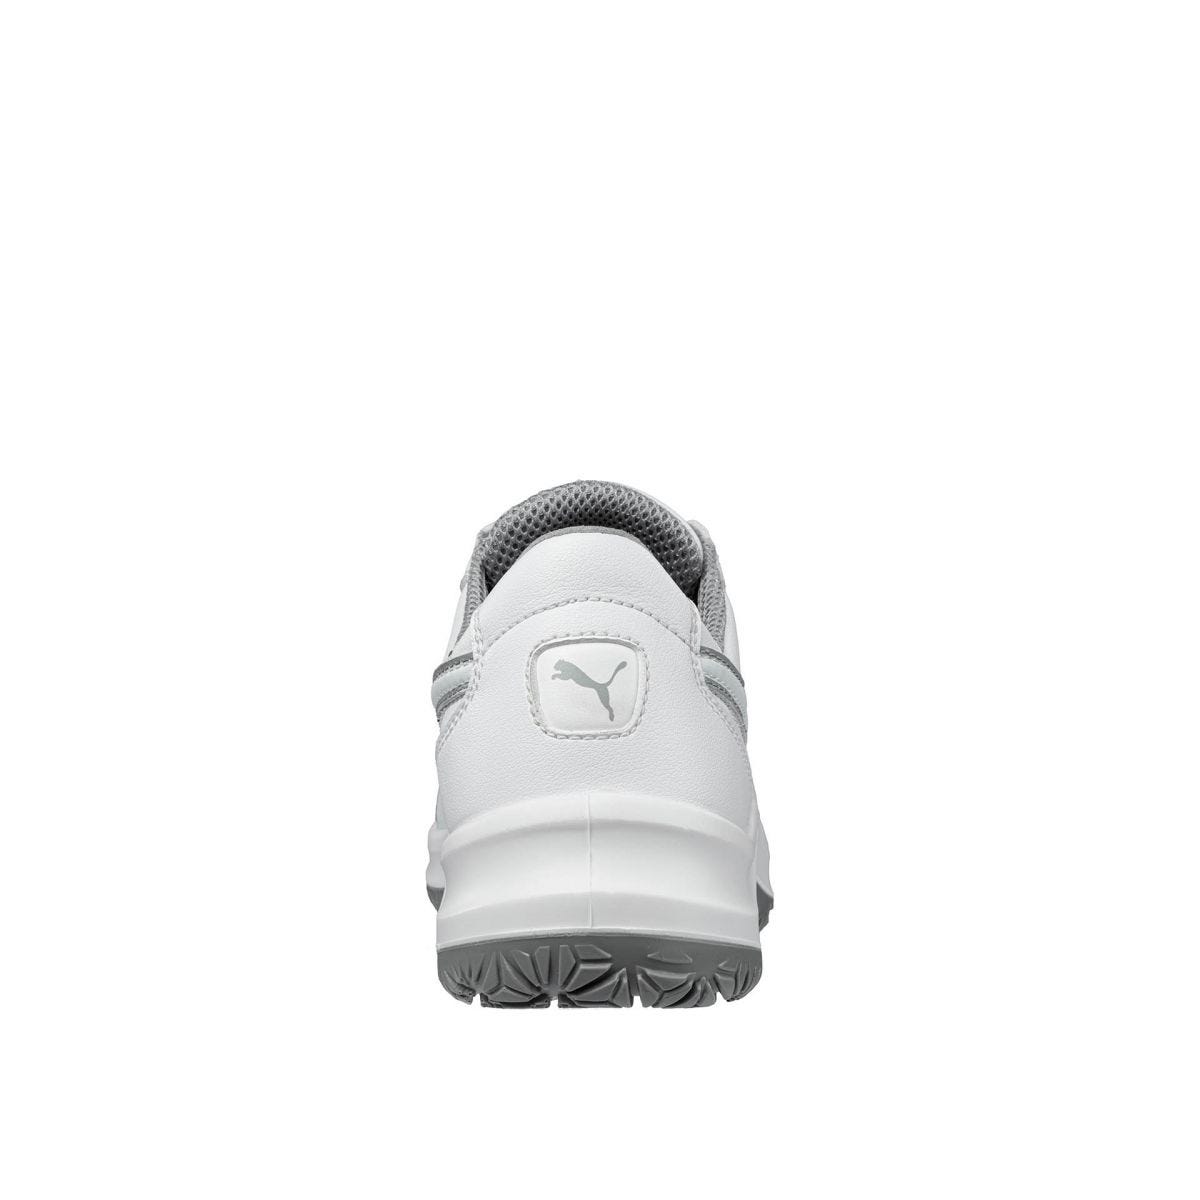 Chaussures de sécurité Clarity low S2 SRC - Puma - Taille 44 1